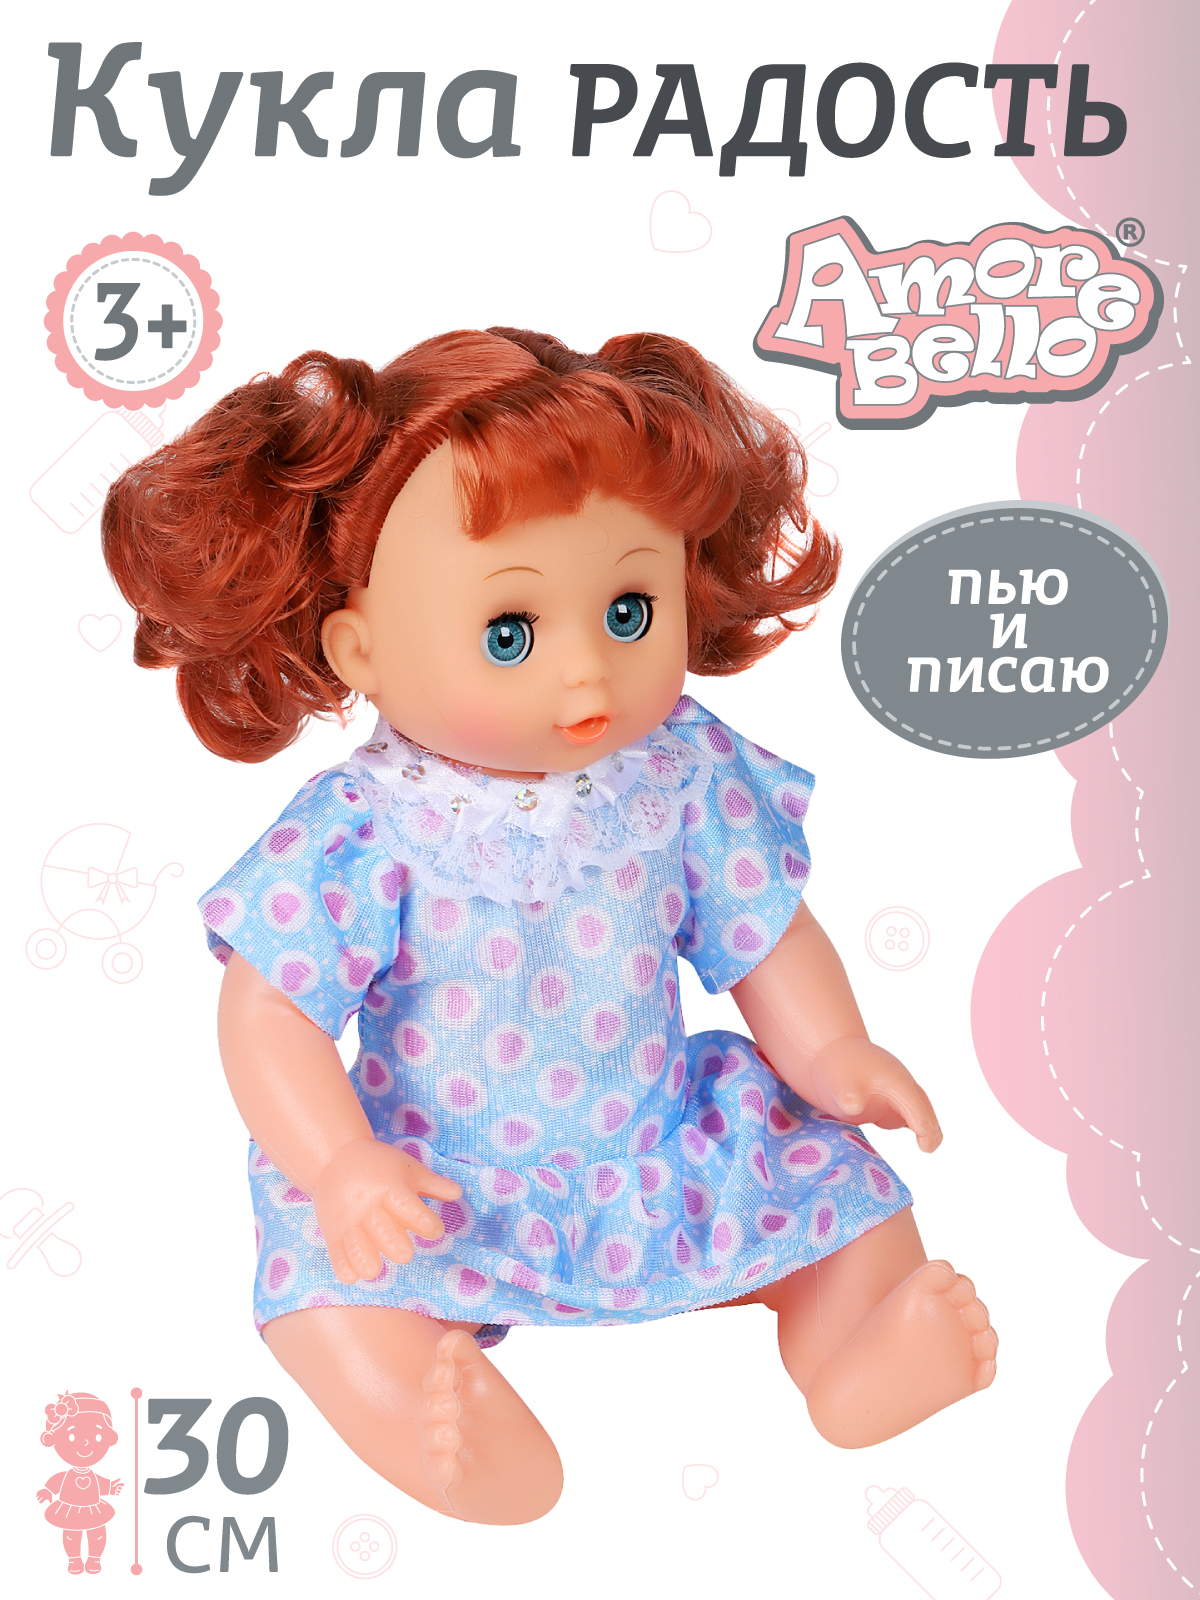 Кукла для девочек Amore Bello серия Радость 30 см пьет и писает, пупс, JB0208941.